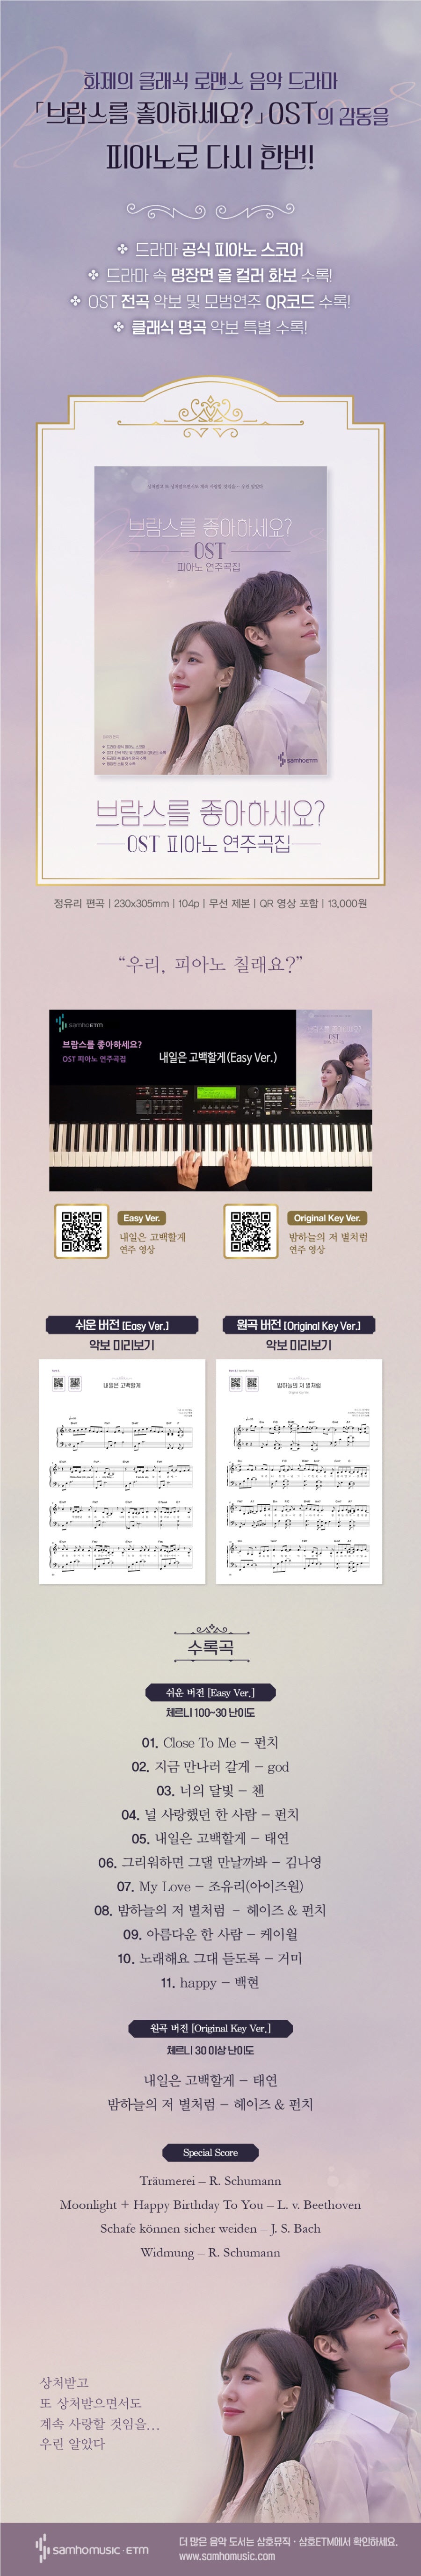 Aimez-vous Brahms OST Piano Scorebook